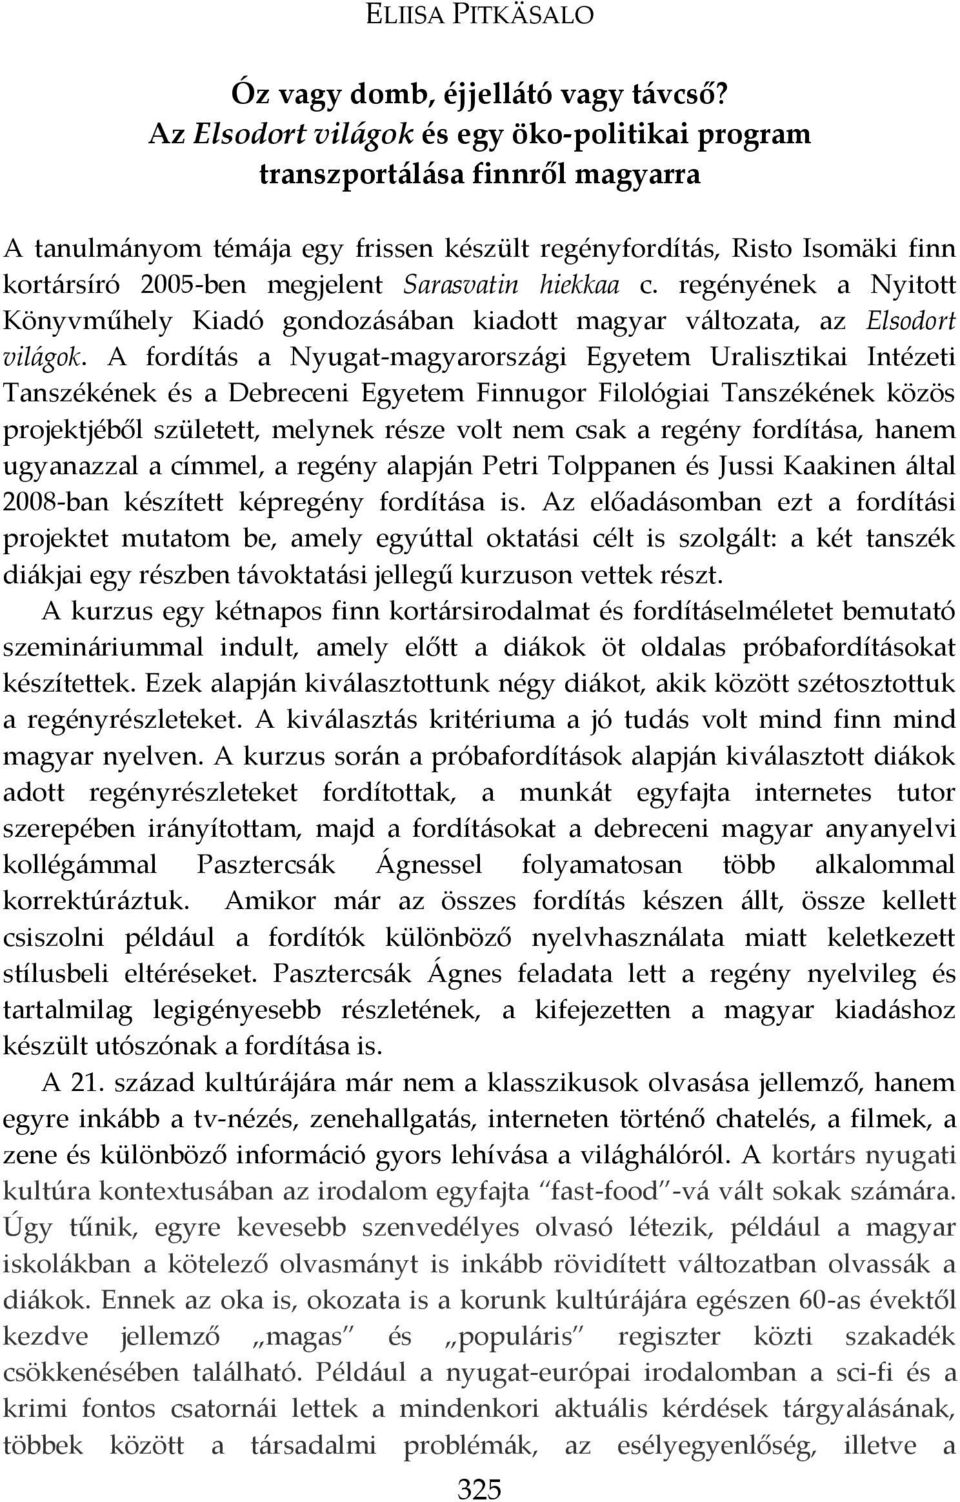 hiekkaa c. regényének a Nyitott Könyvműhely Kiadó gondoz{s{ban kiadott magyar v{ltozata, az Elsodort vil{gok.